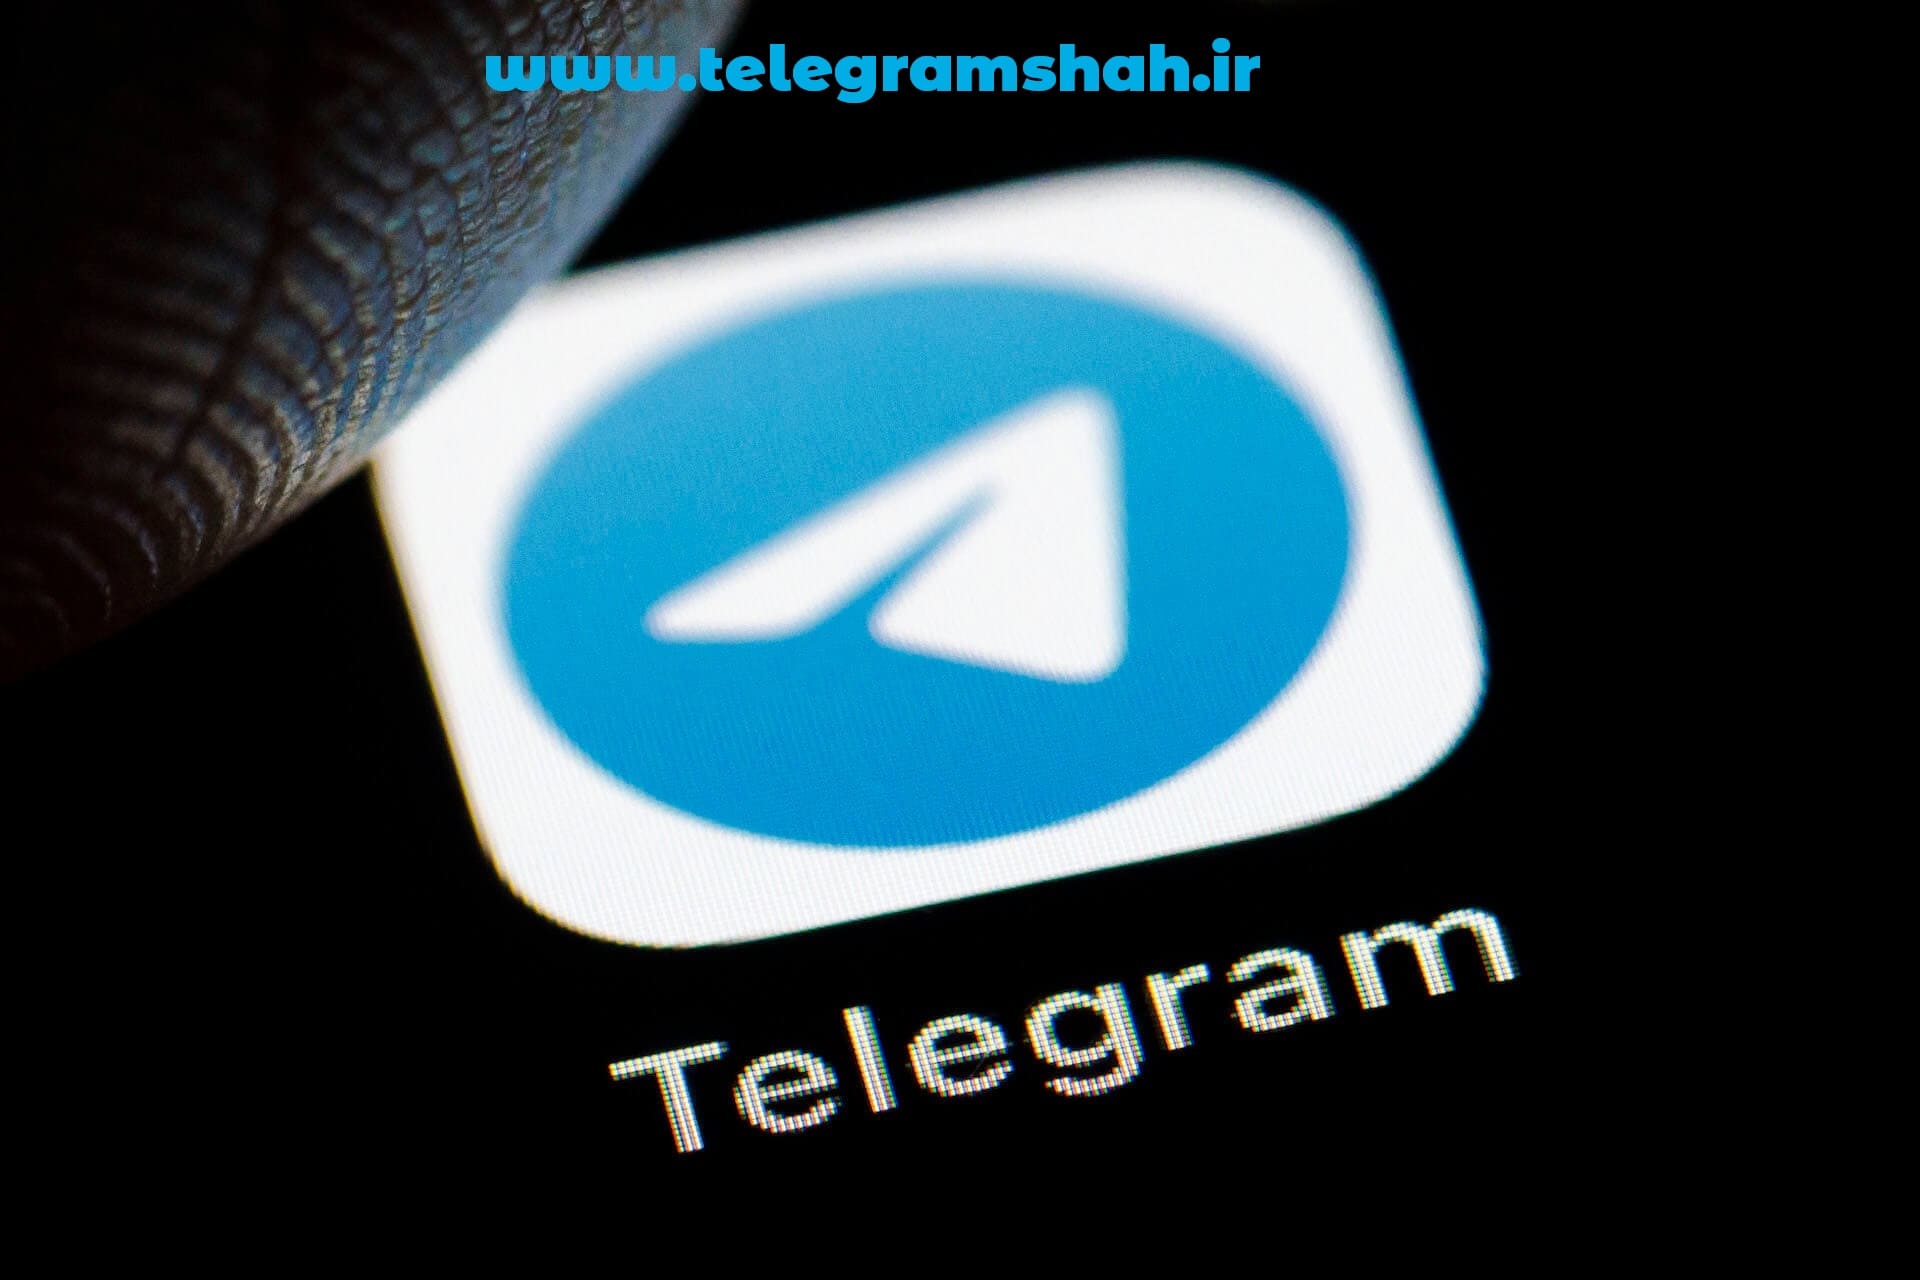 خرید تلگرام پریمیوم در ایران